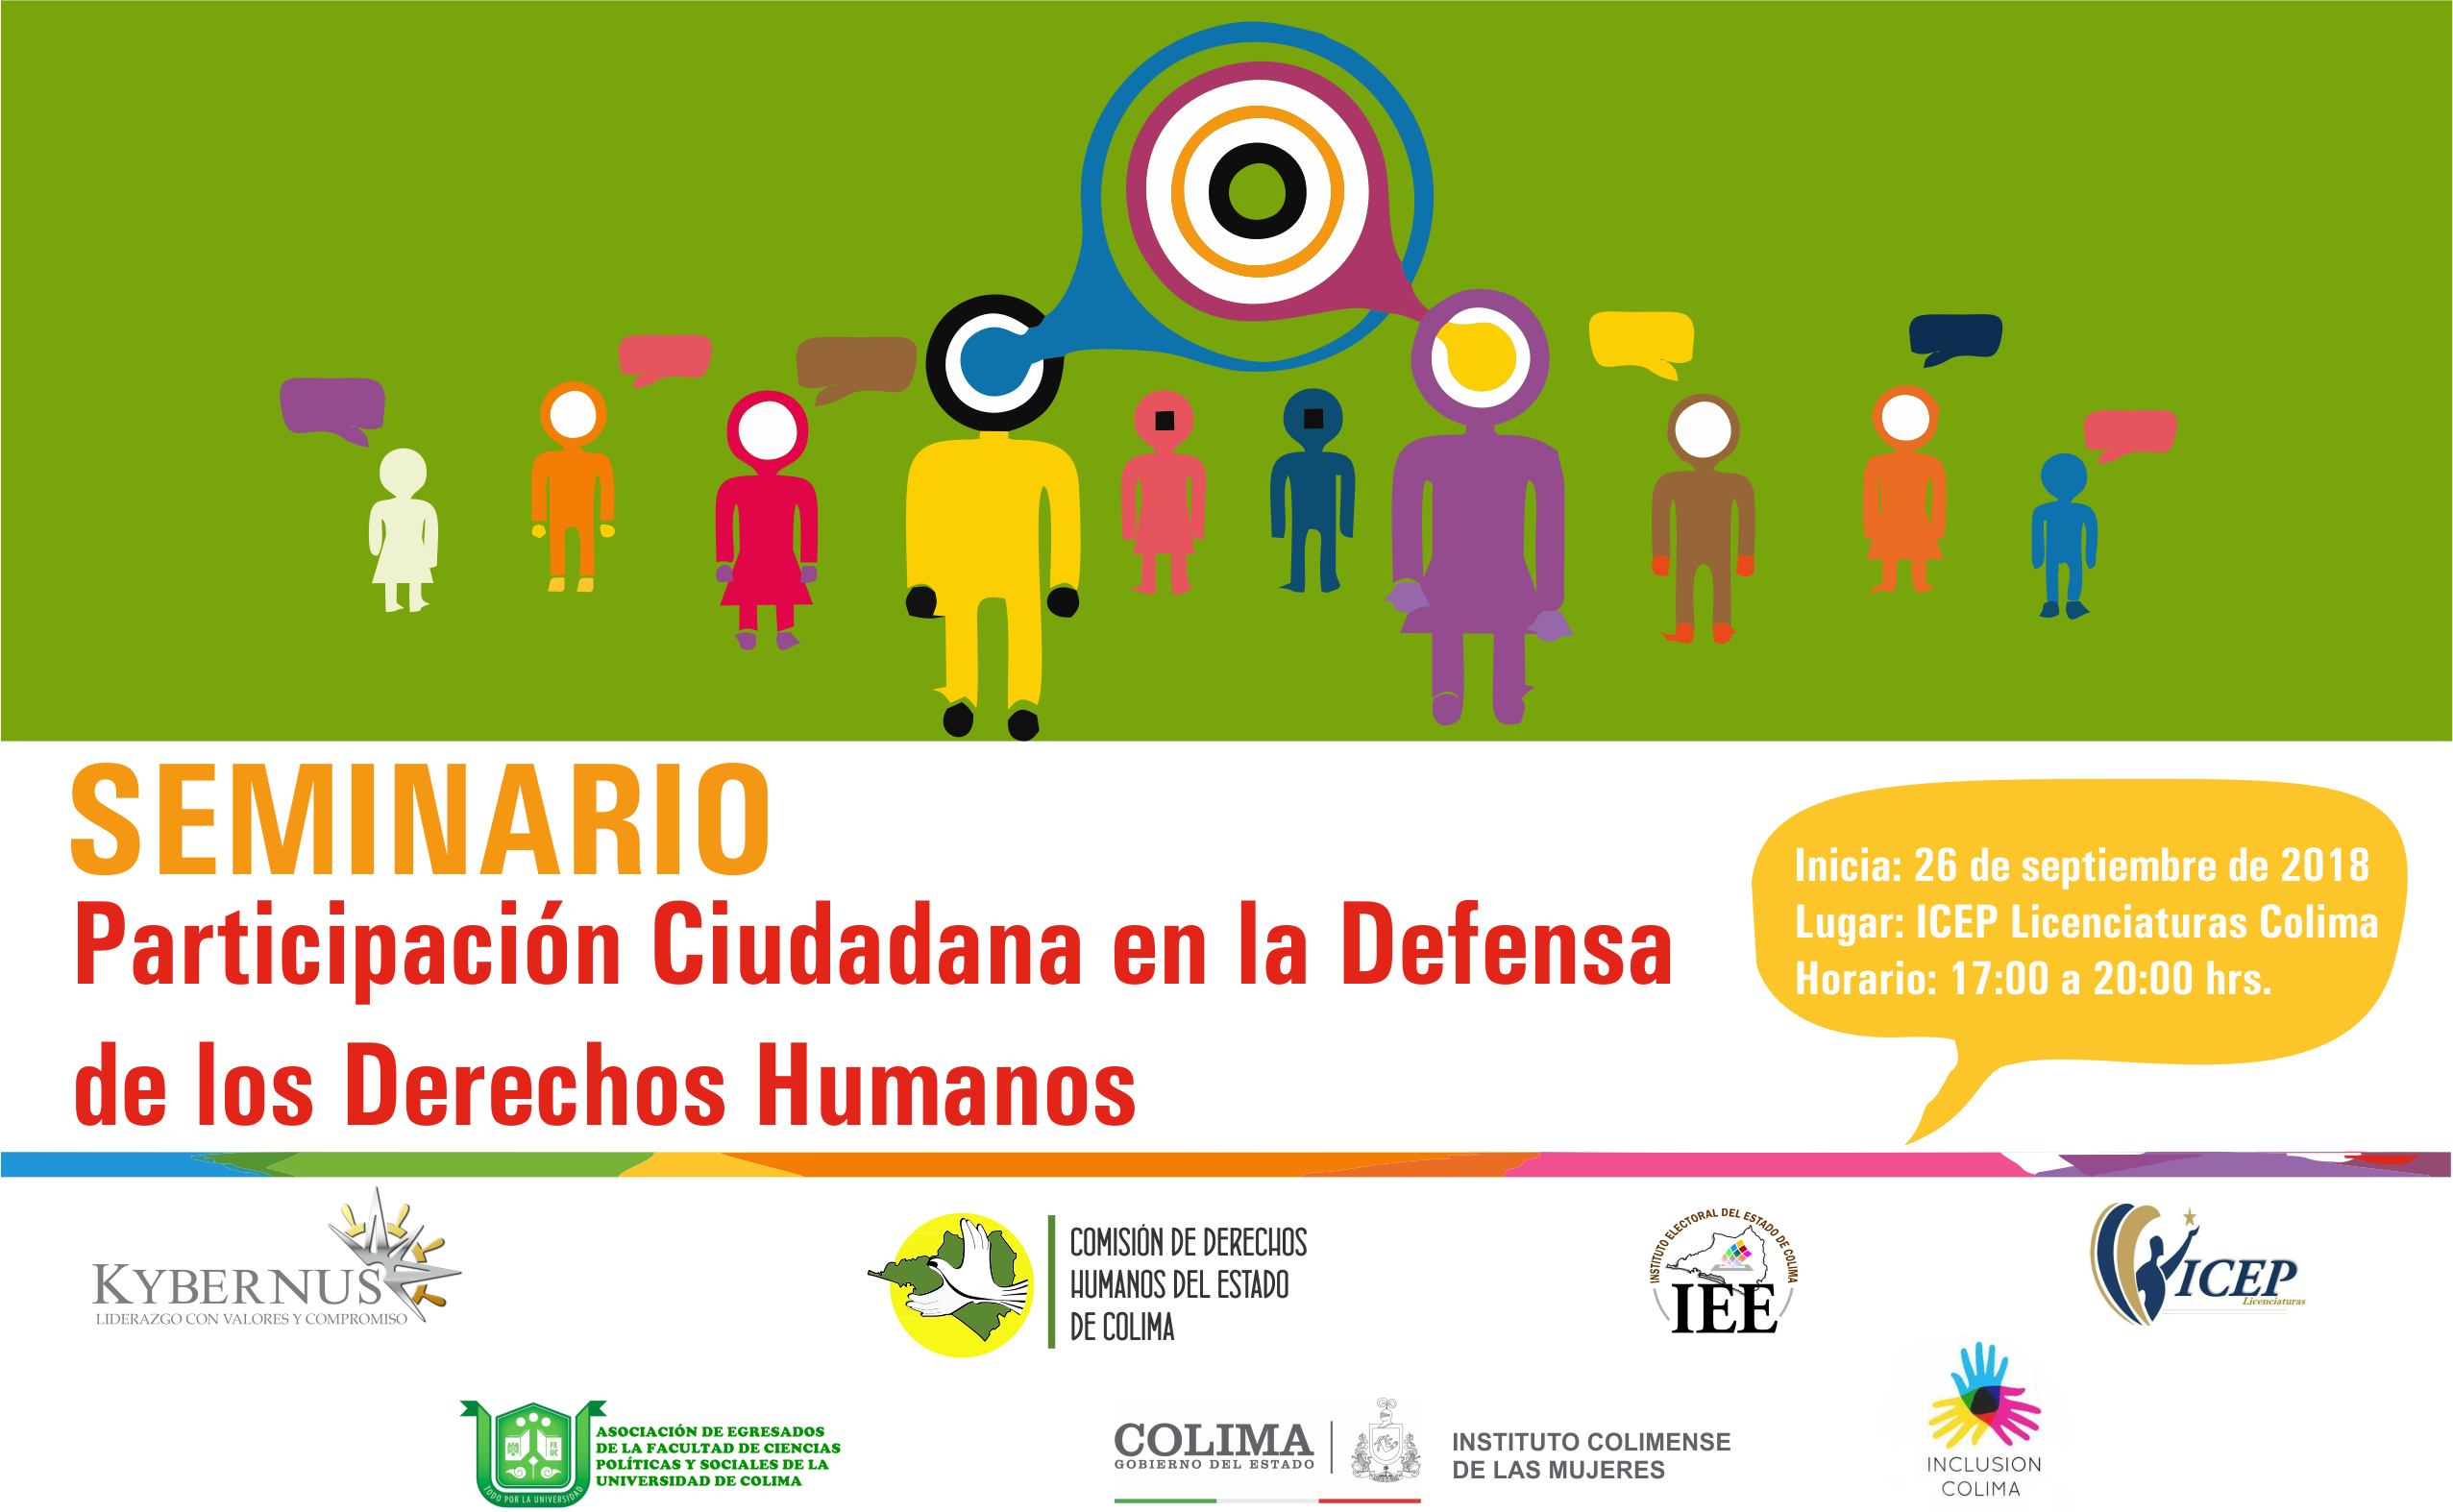 Seminario “Participación Ciudadana en la Defensa de los Derechos Humanos”